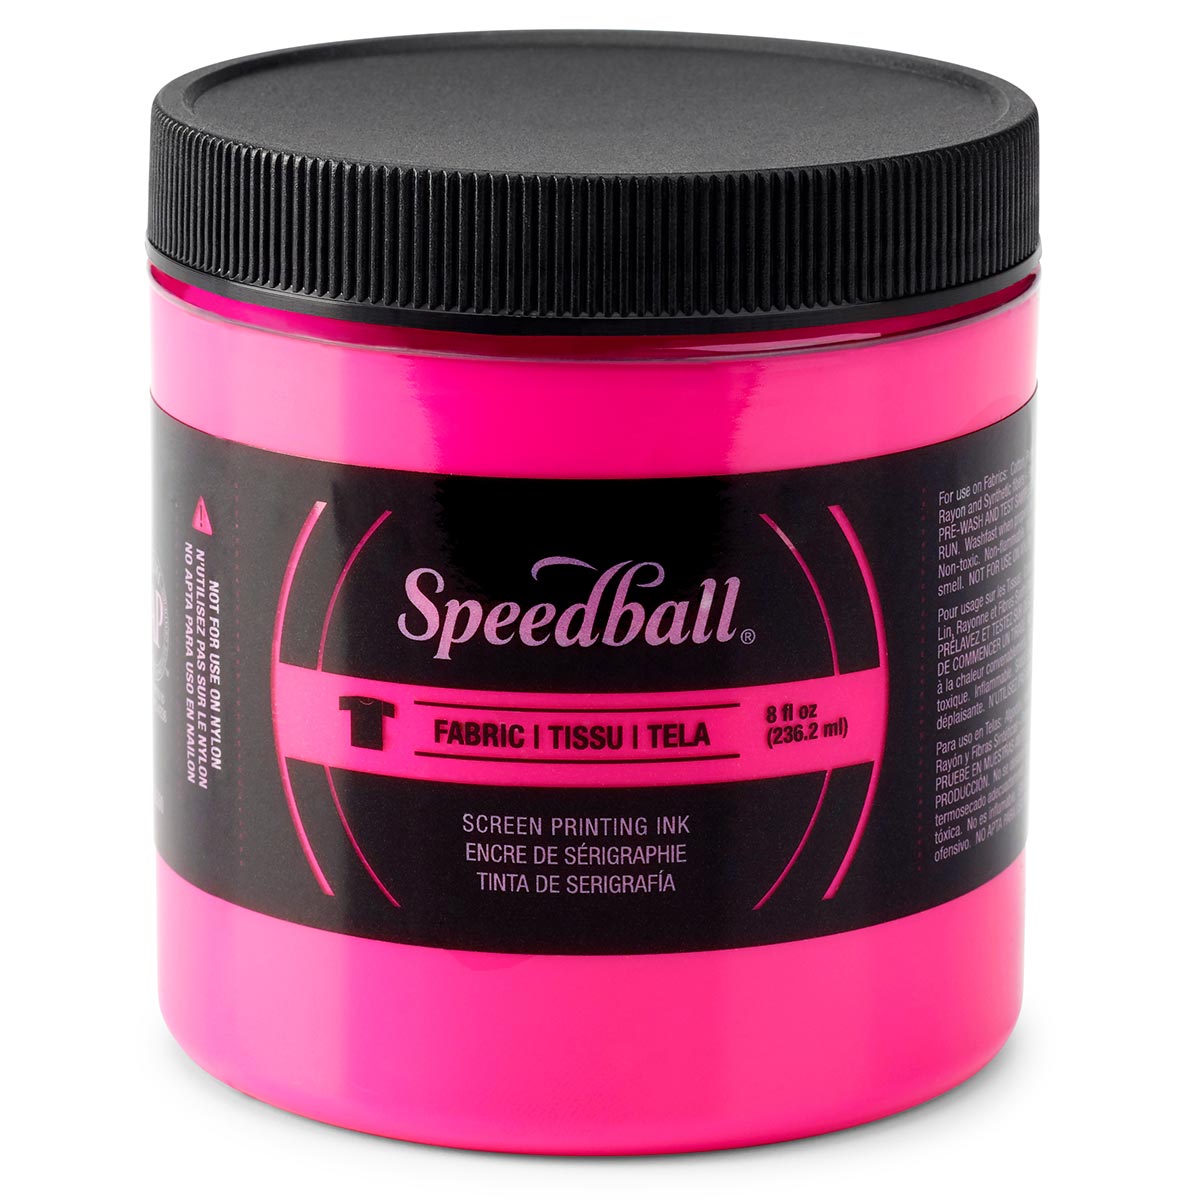 Speedball - Stoff-Siebdruckfarbe 236ml (8oz) - Fluoreszierendes Magenta